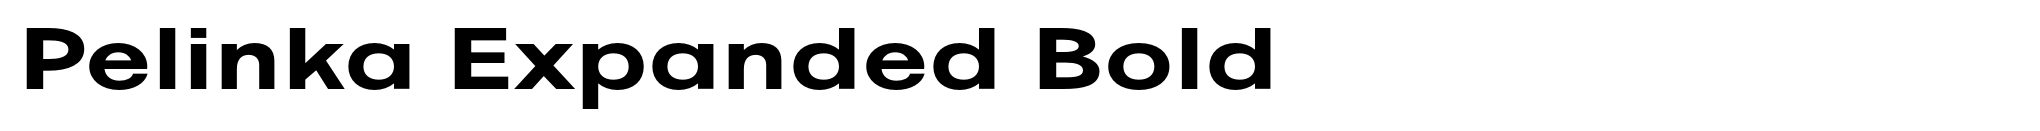 Pelinka Expanded Bold image